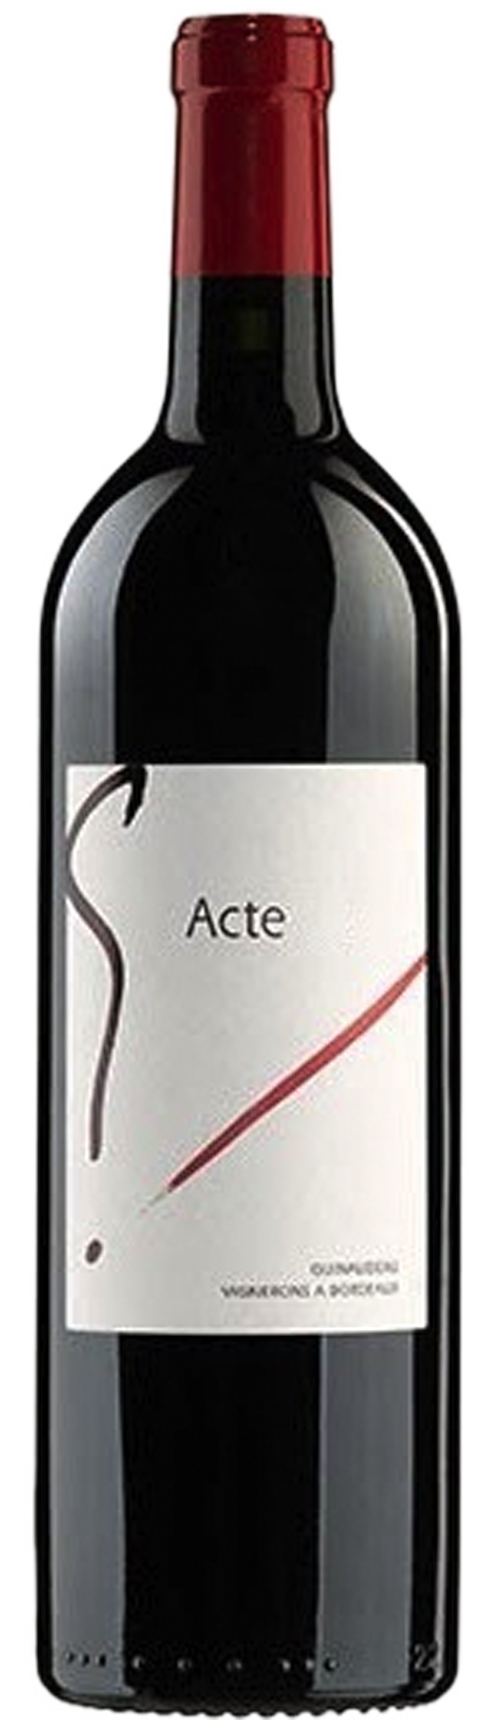 Image of product G'Acte 1, Bordeaux Supérieur